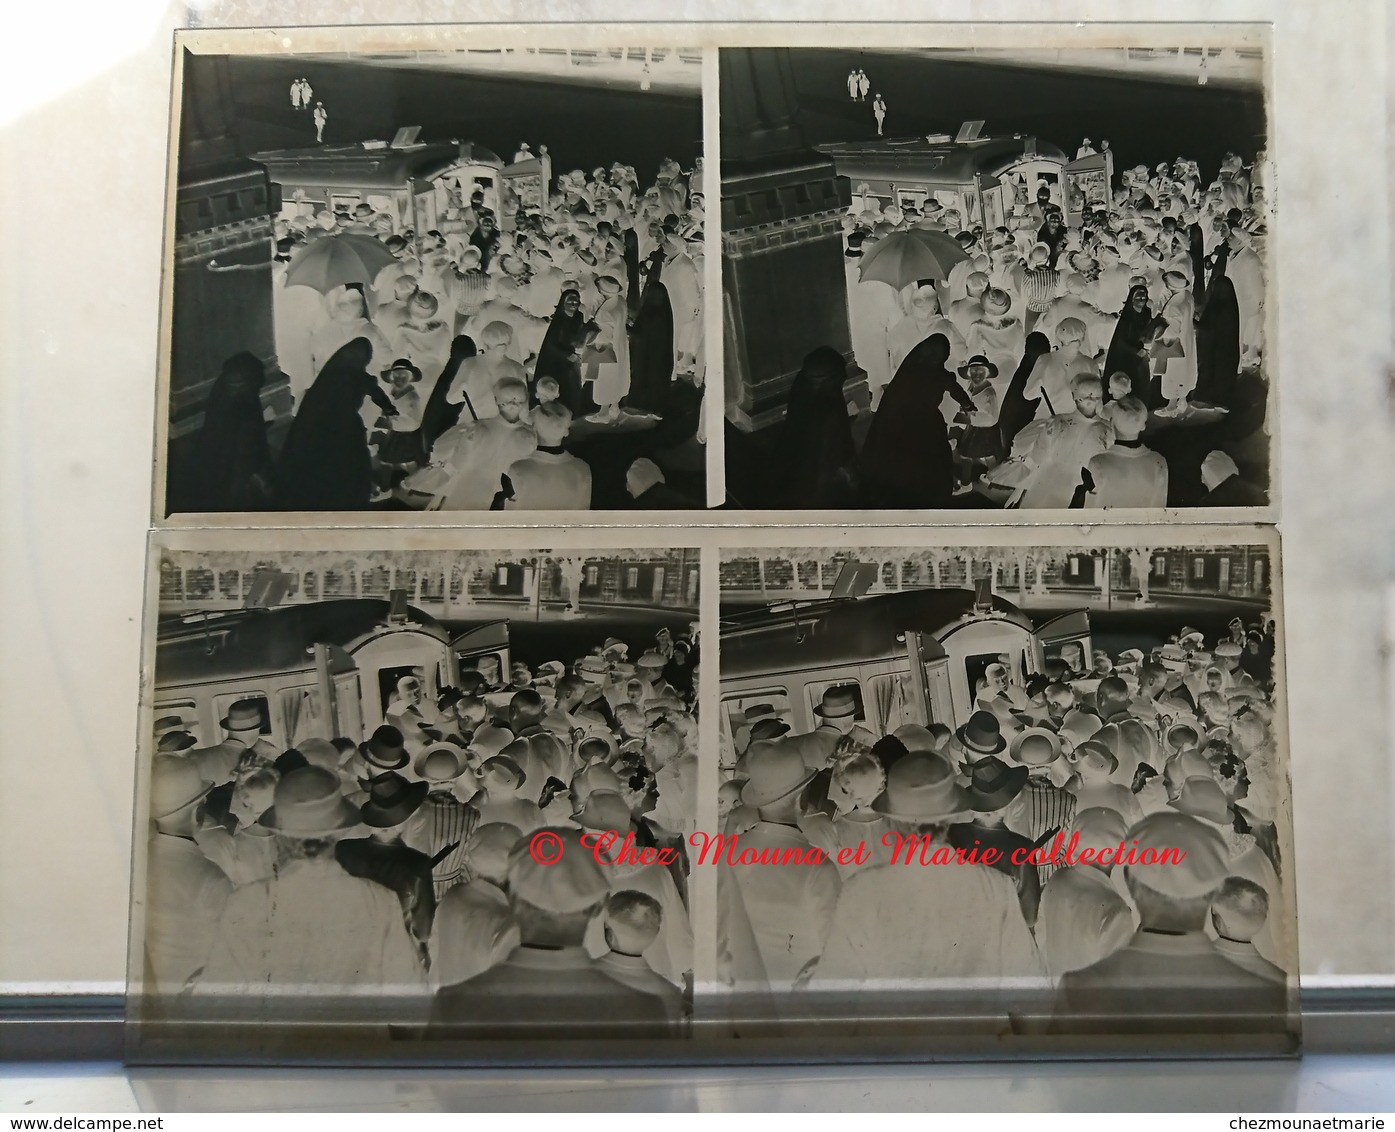 TRANSPORT DE L HOMME AU POUMON D ACIER FRED SNITE 3 JUIN 1939 - LOT DE 2 - PLAQUE DE VERRE STEREO 13*6 CM - Glass Slides